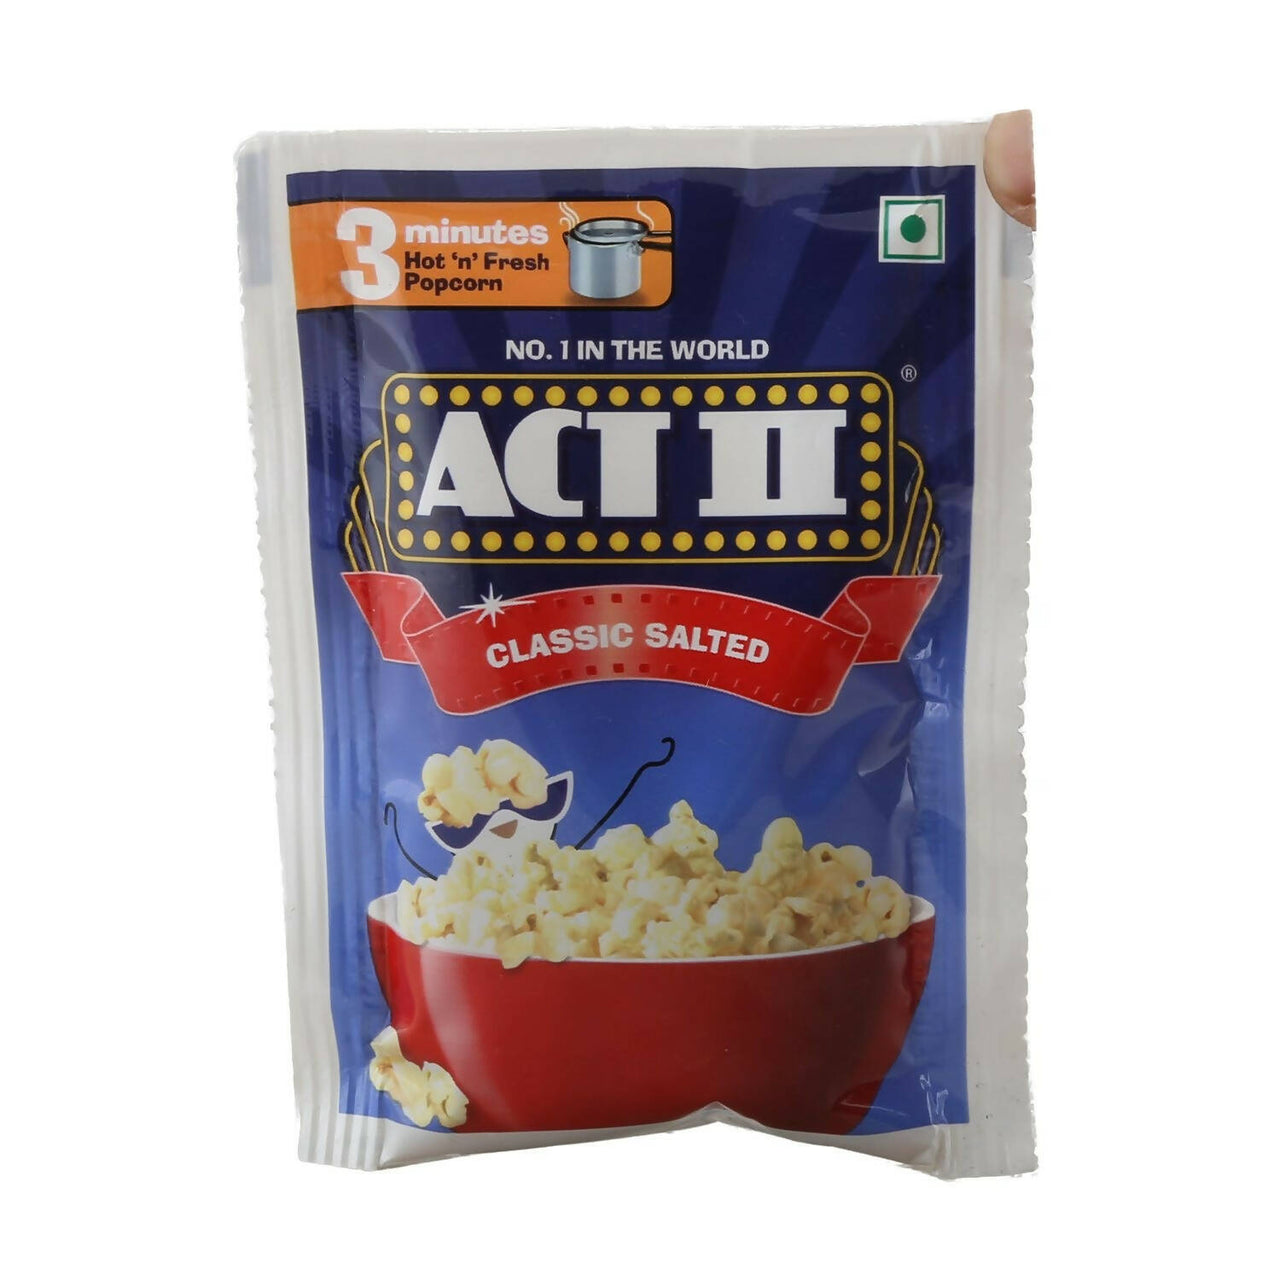 Act II Instant Popcorn - Classic Salted - Distacart